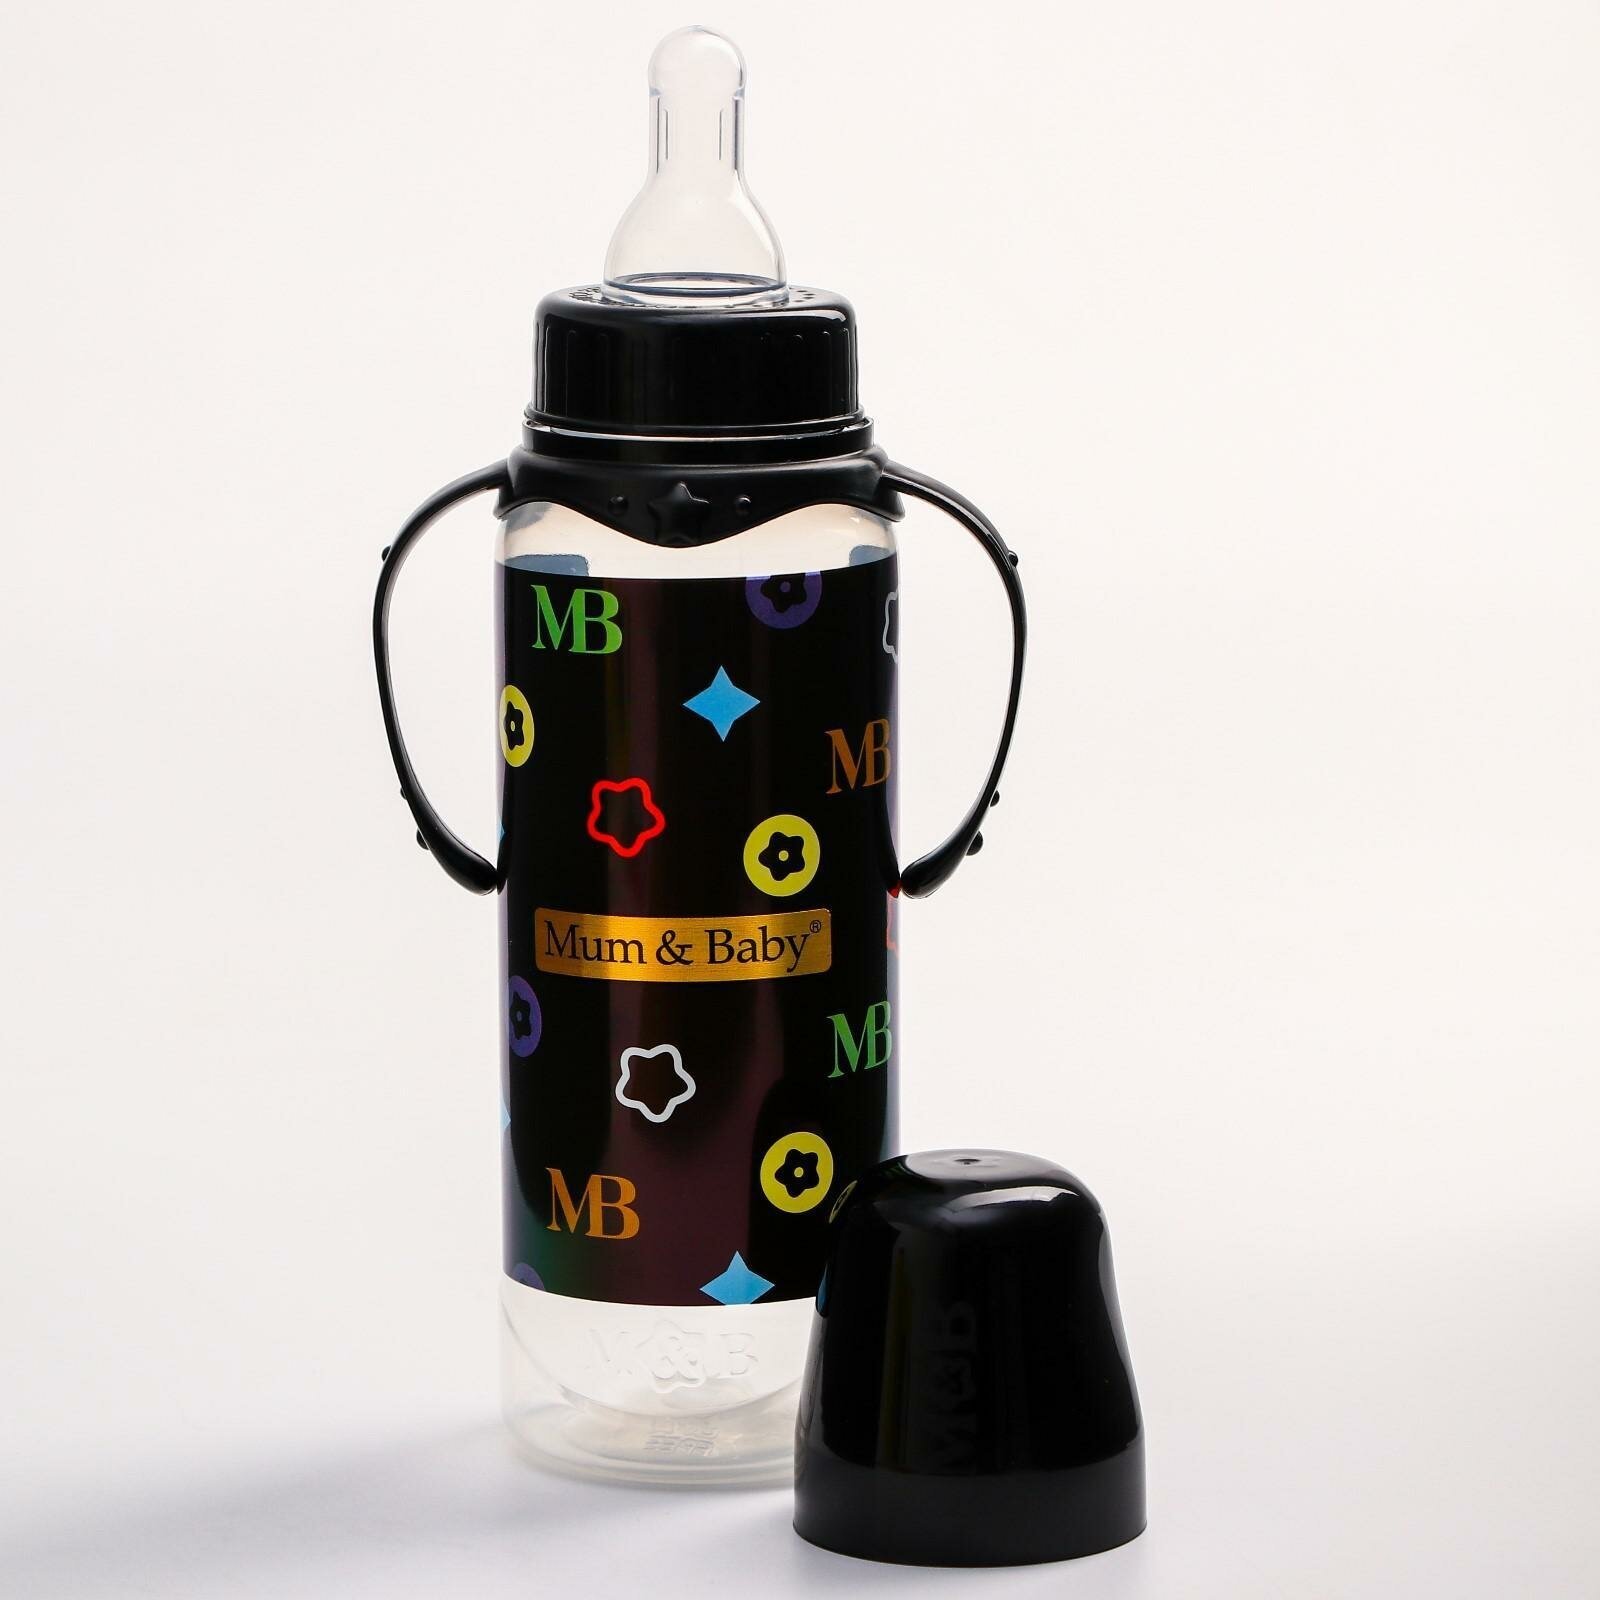 Бутылочка для кормления Mum&Baby "MB", 250 мл., цилиндр, с ручками